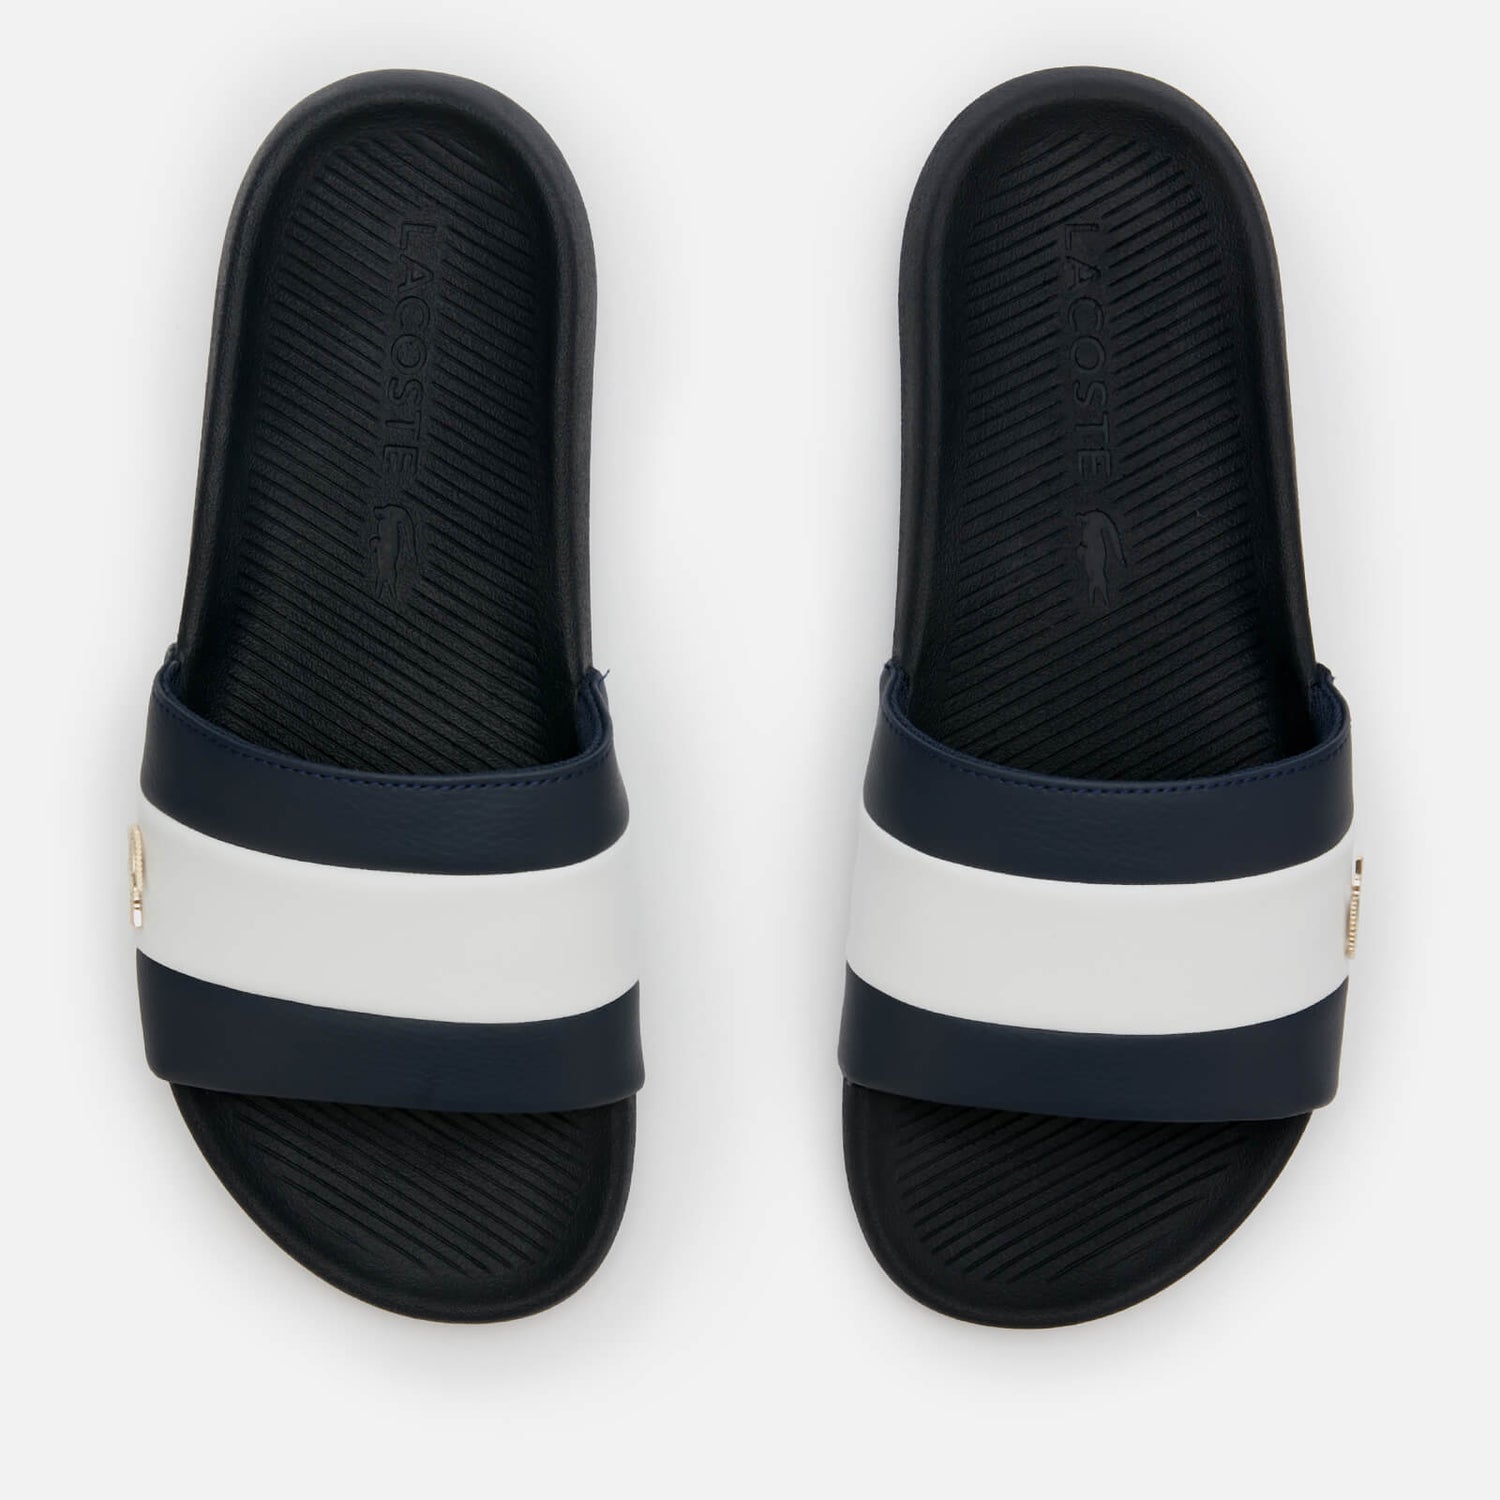 Lacoste Men's Croco Slide 120 Slide Sandals - Navy/White